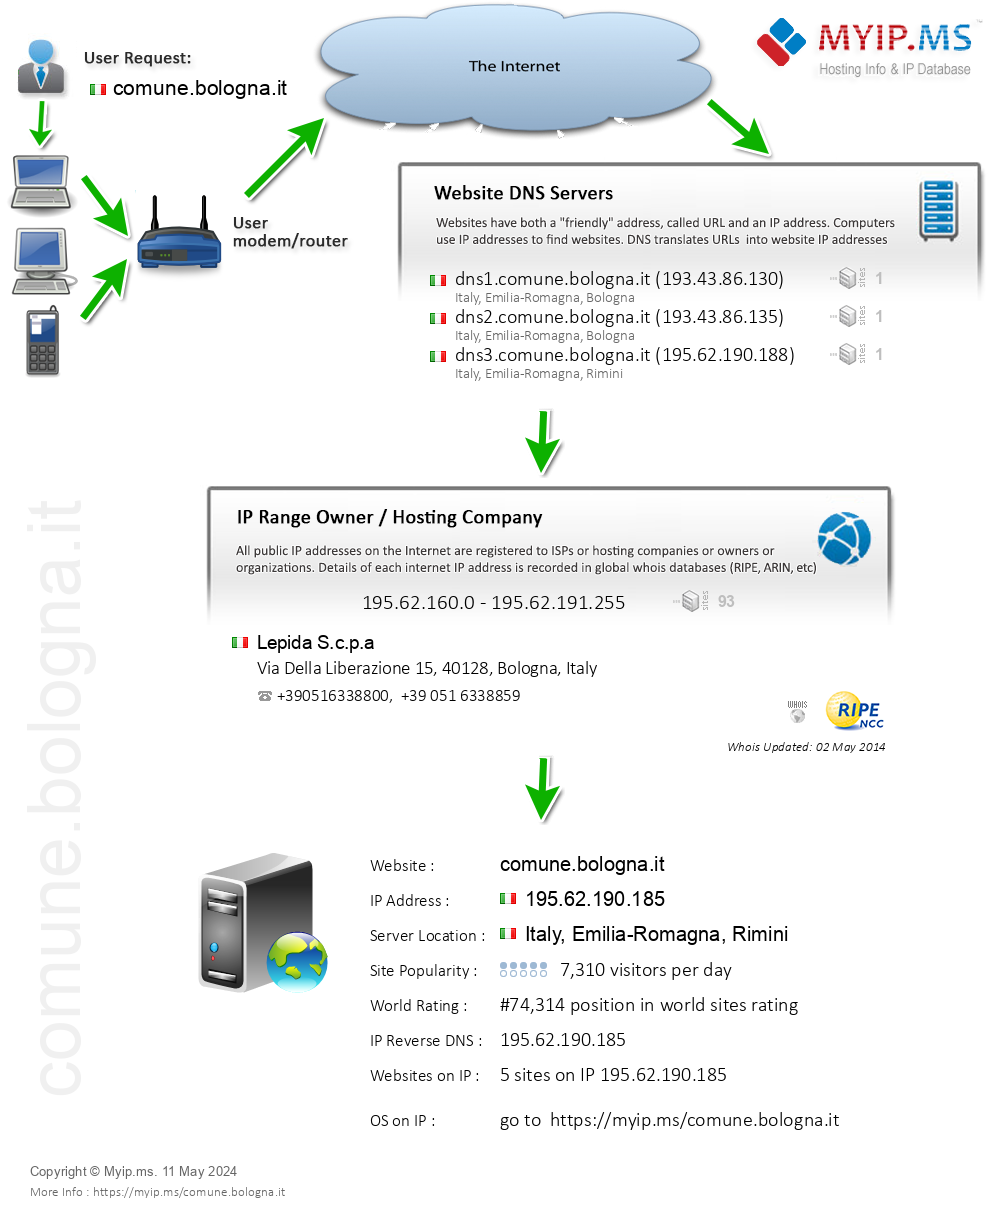 Comune.bologna.it - Website Hosting Visual IP Diagram